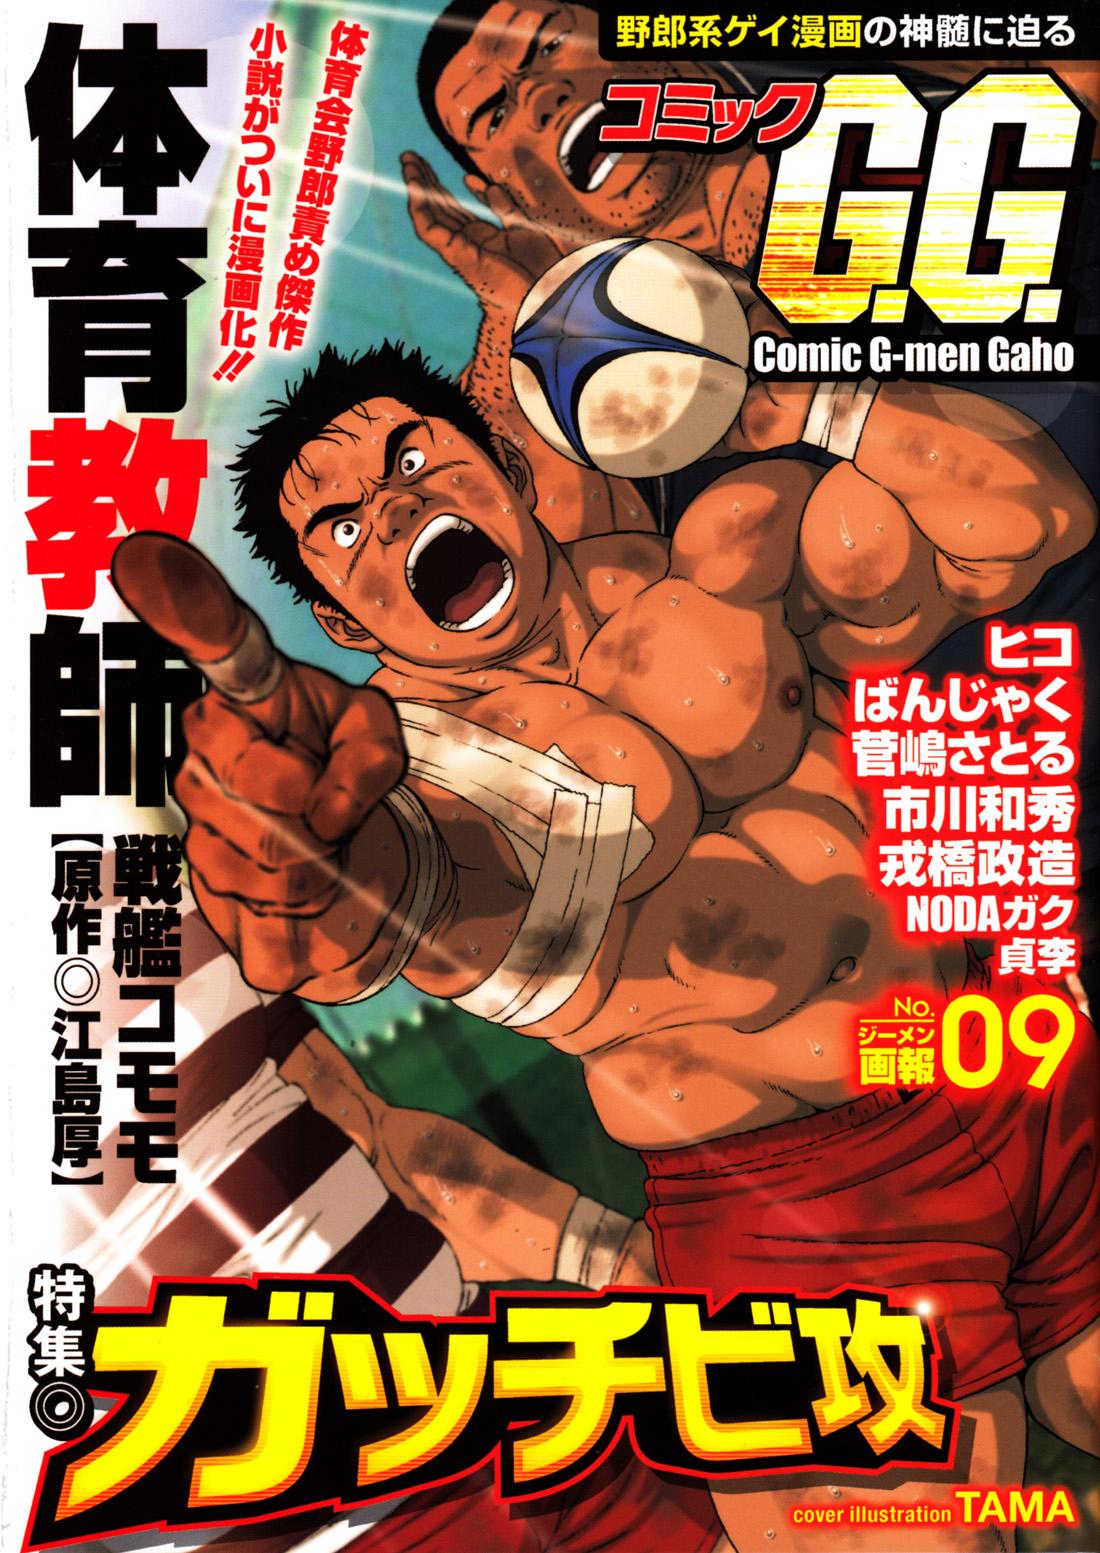 Comic G-men Gaho No.09 Gacchibi Zeme 0